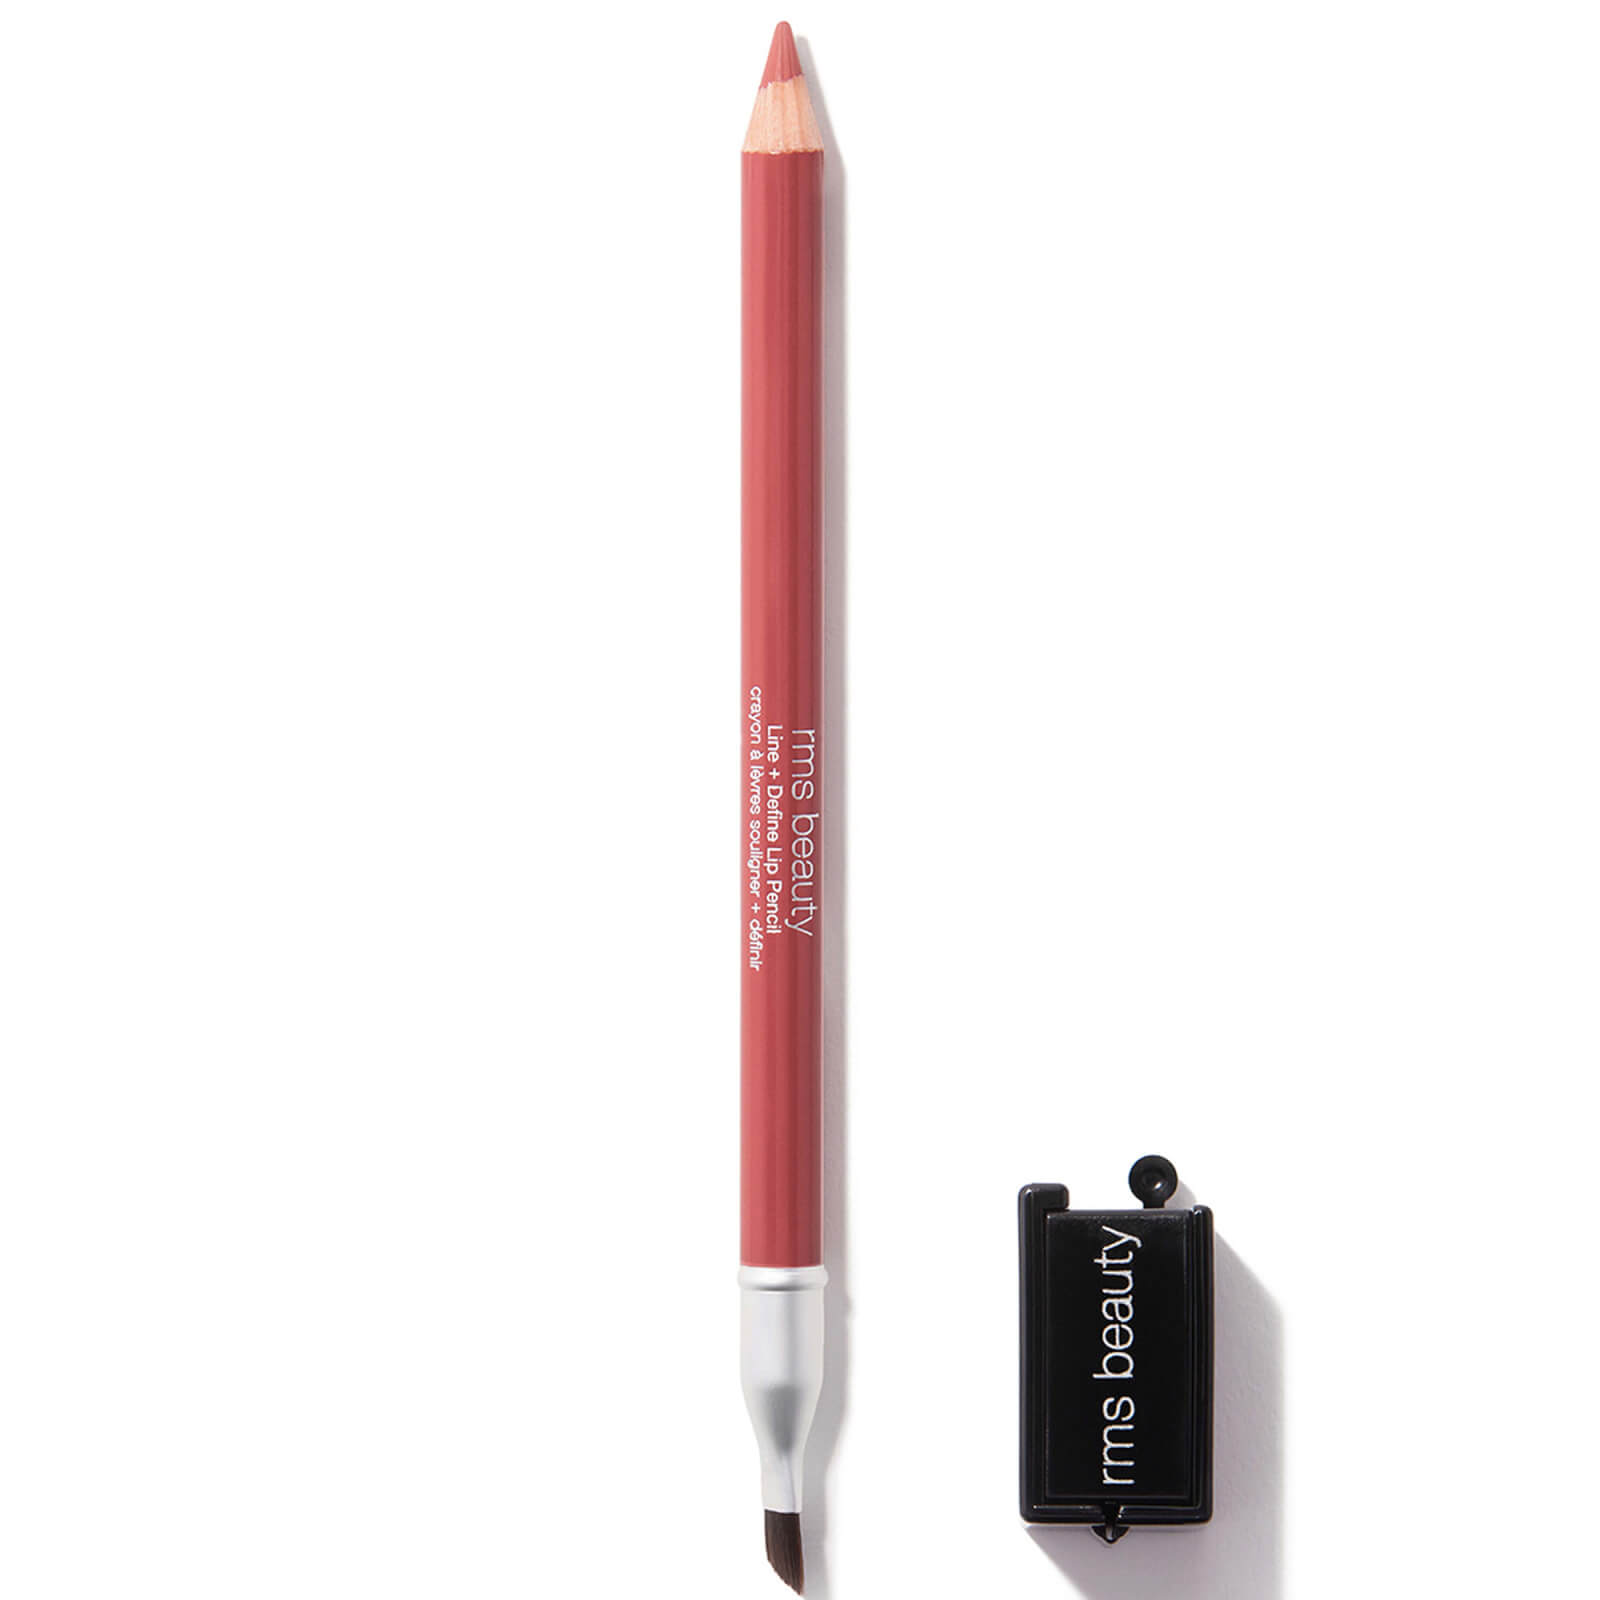 Rms Beauty Go Nude Lip Pencil 1.08g (various Shades) - Sunrise Nude